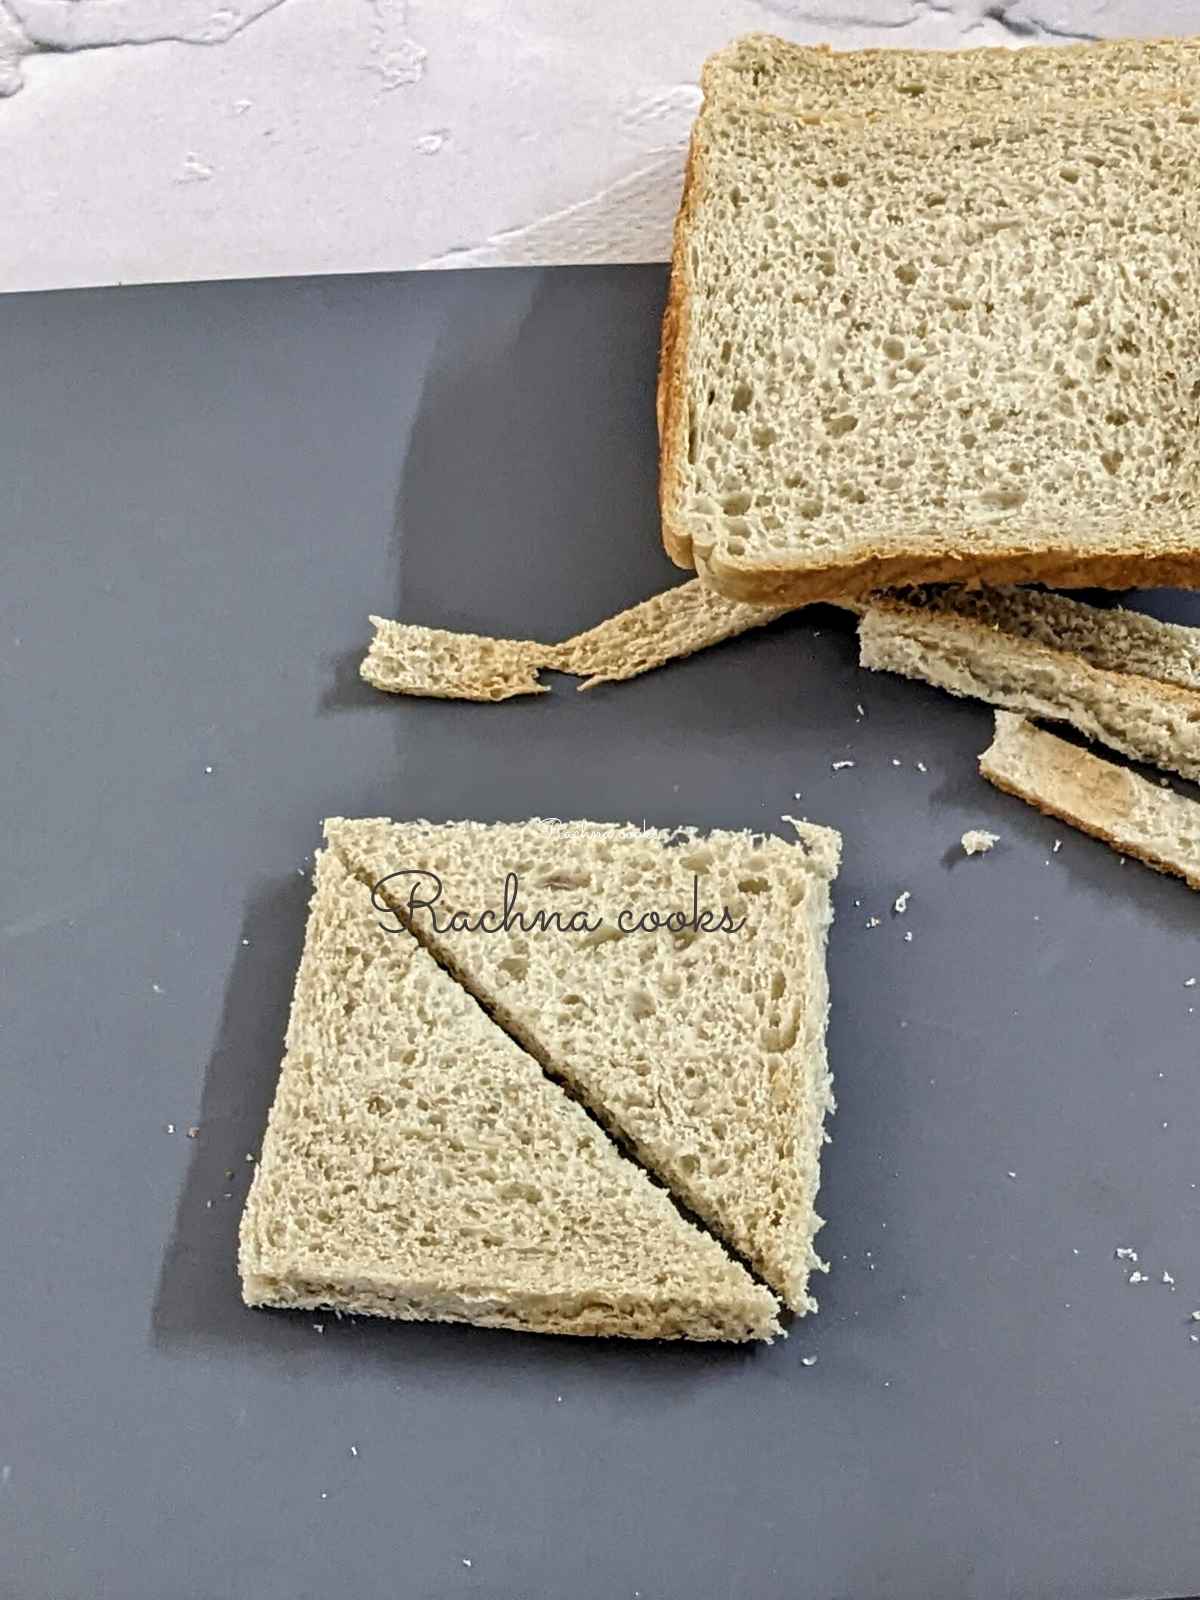 Bread slices cut into 2 triangles.